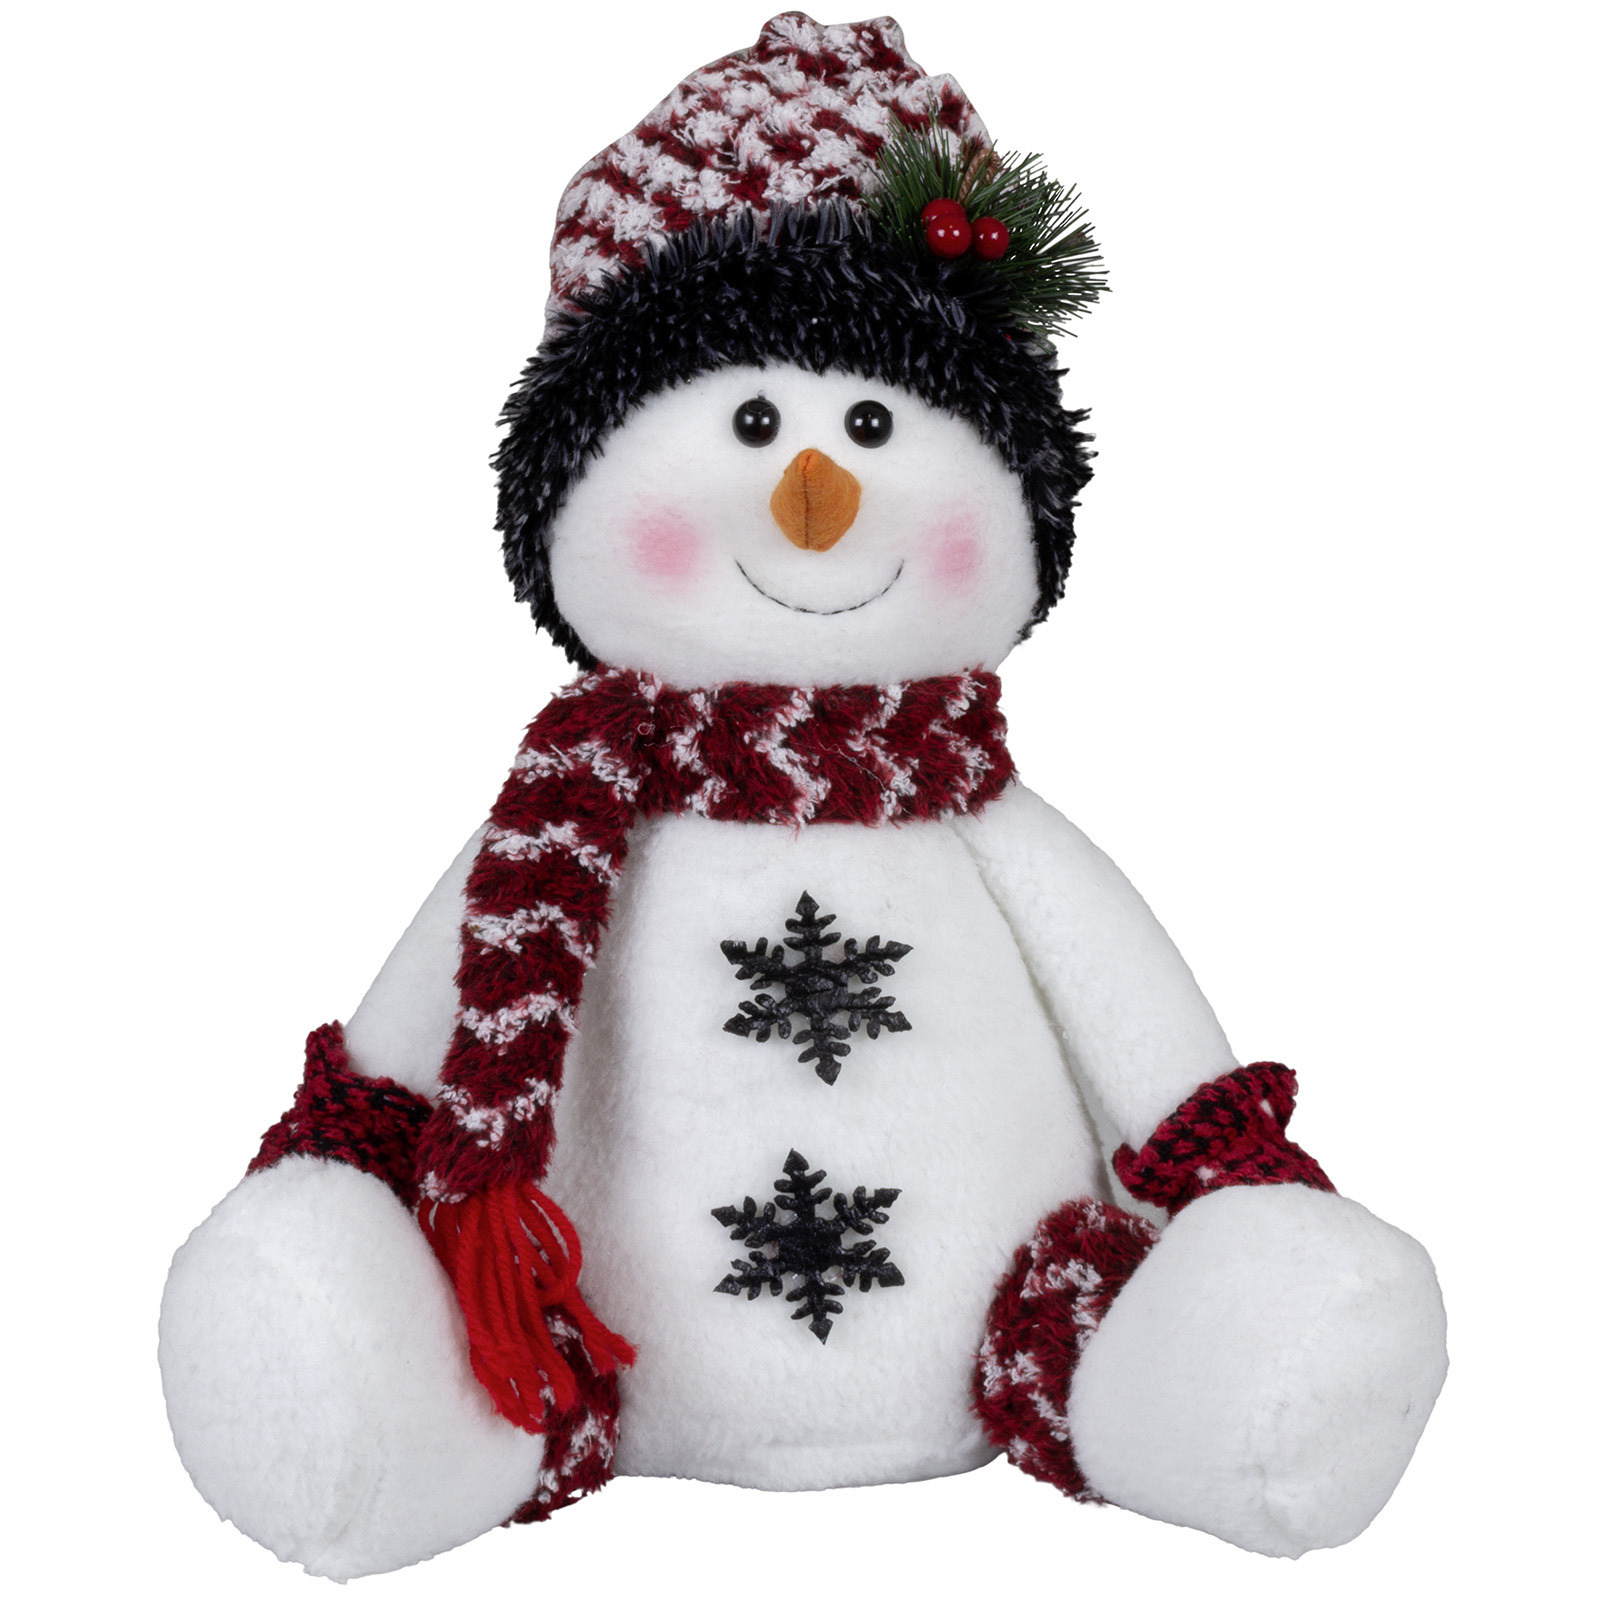 Pluche decoratie sneeuwpop - 36 cm - met witte muts - zittend